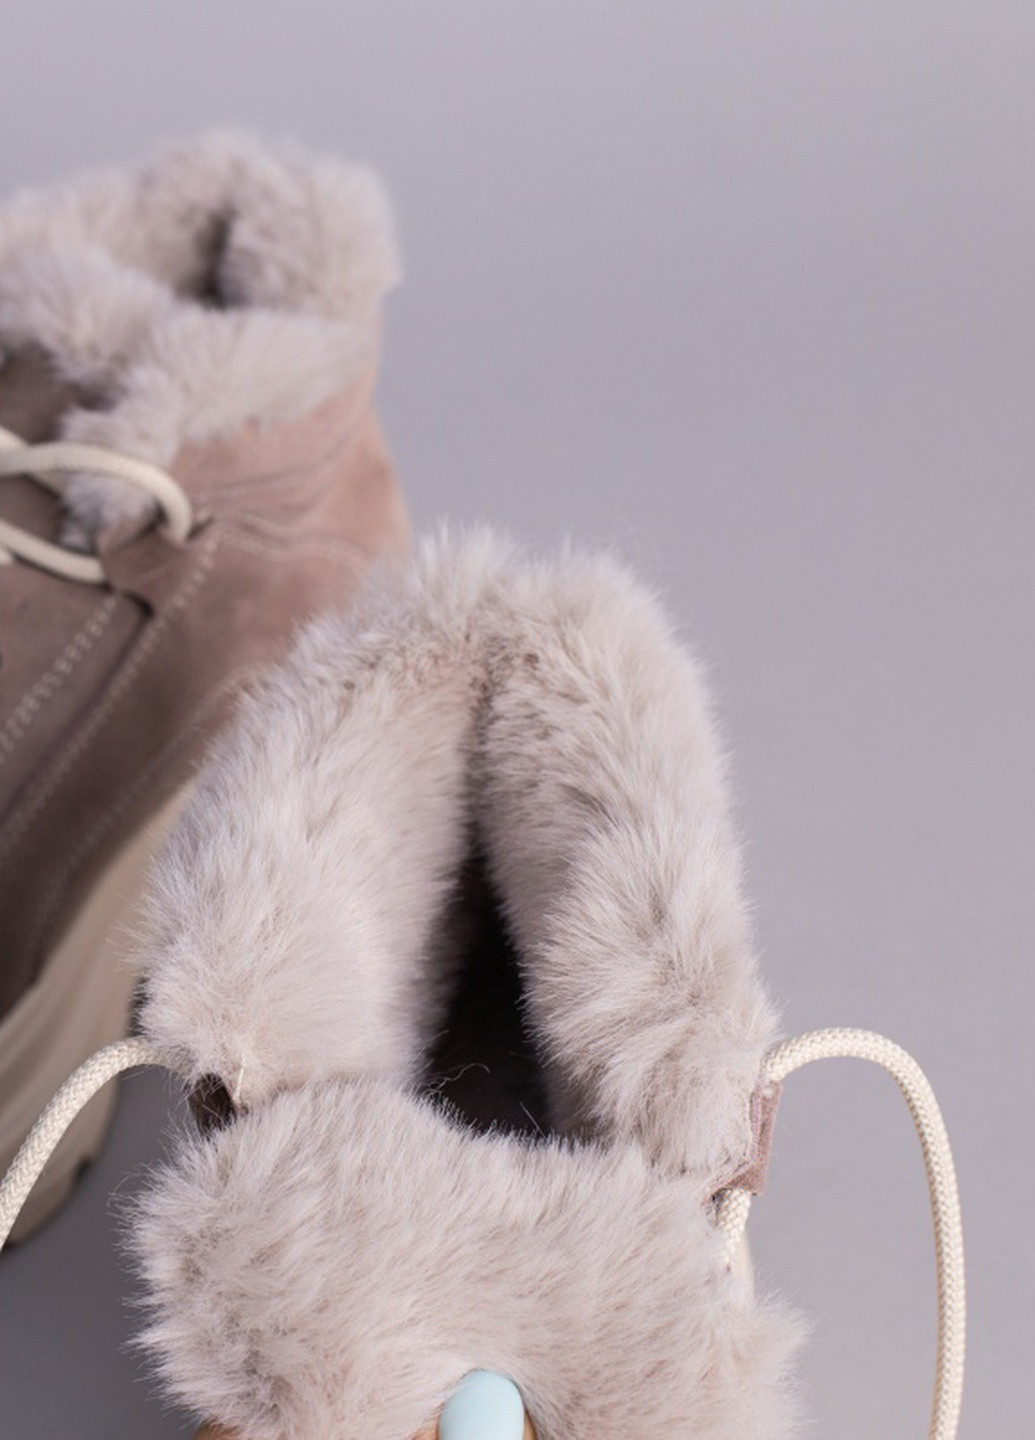 Зимние ботинки shoesband Brand без декора из натуральной замши